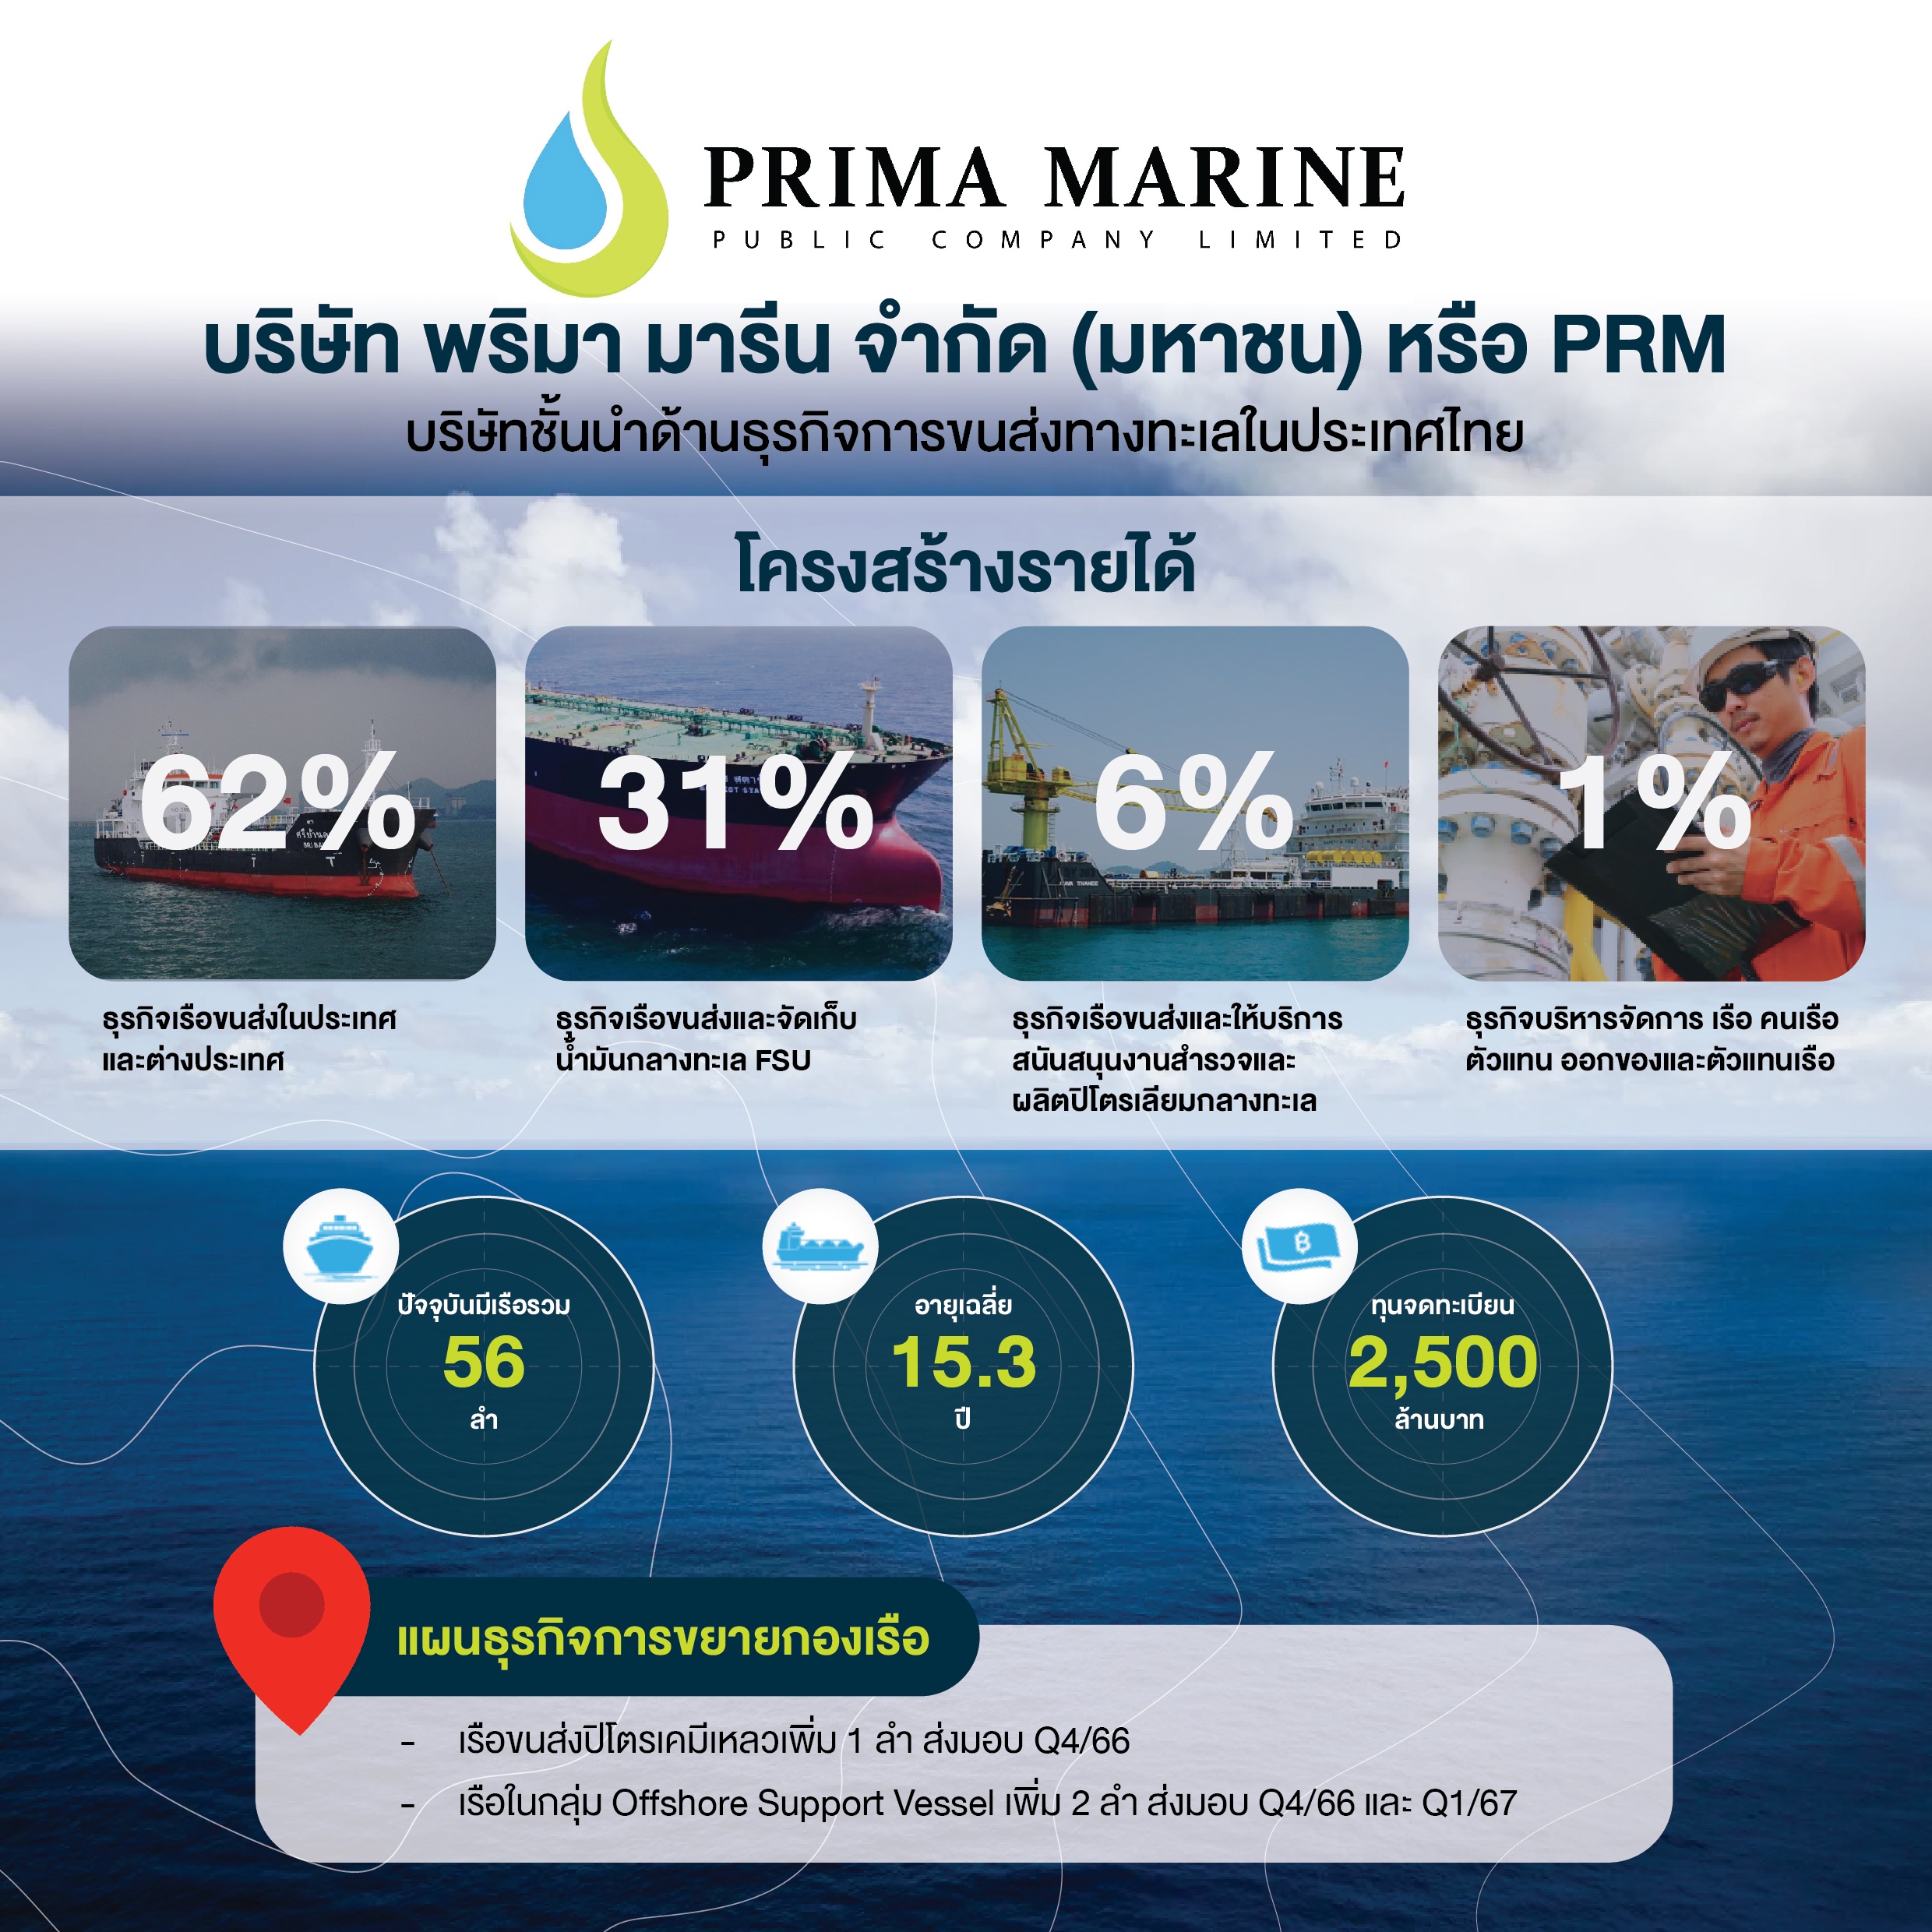 บริษัท พริมา มารีน จำกัด (มหาชน) หรือ PRM บริษัทชั้นนำด้านธุรกิจขนส่งทางทะเลในประเทศไทย